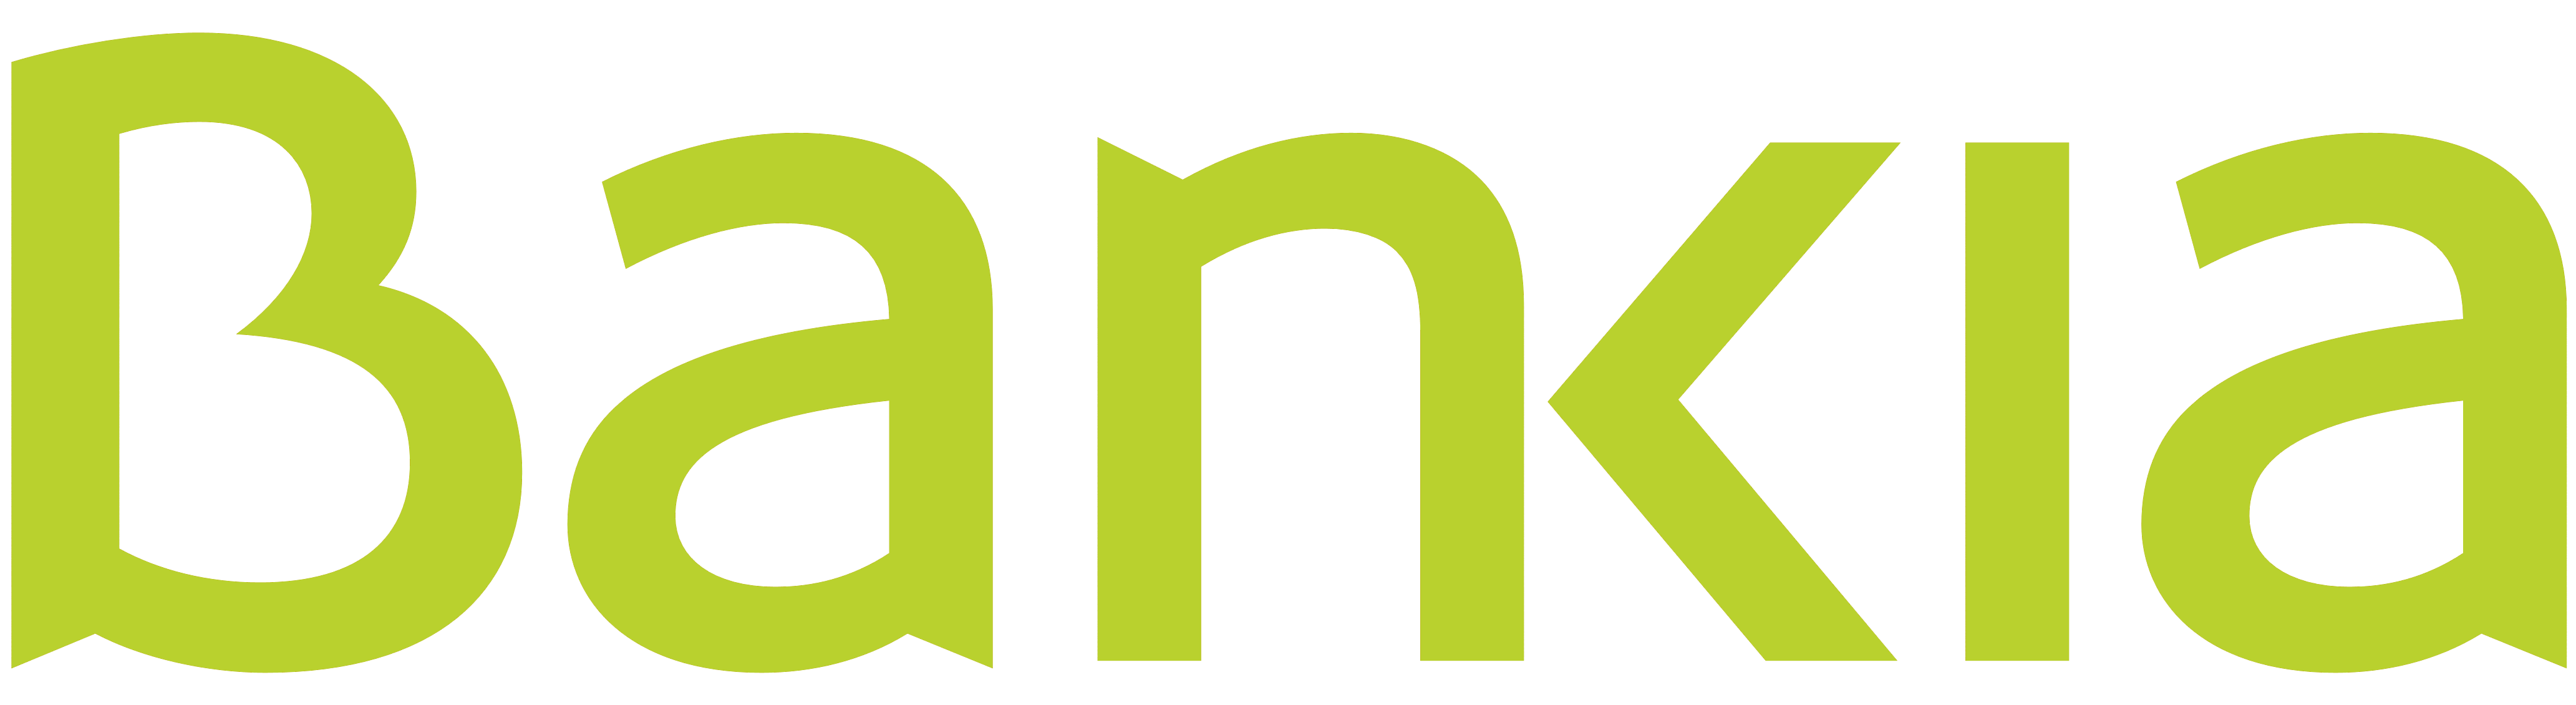 Bankia logo, logotype